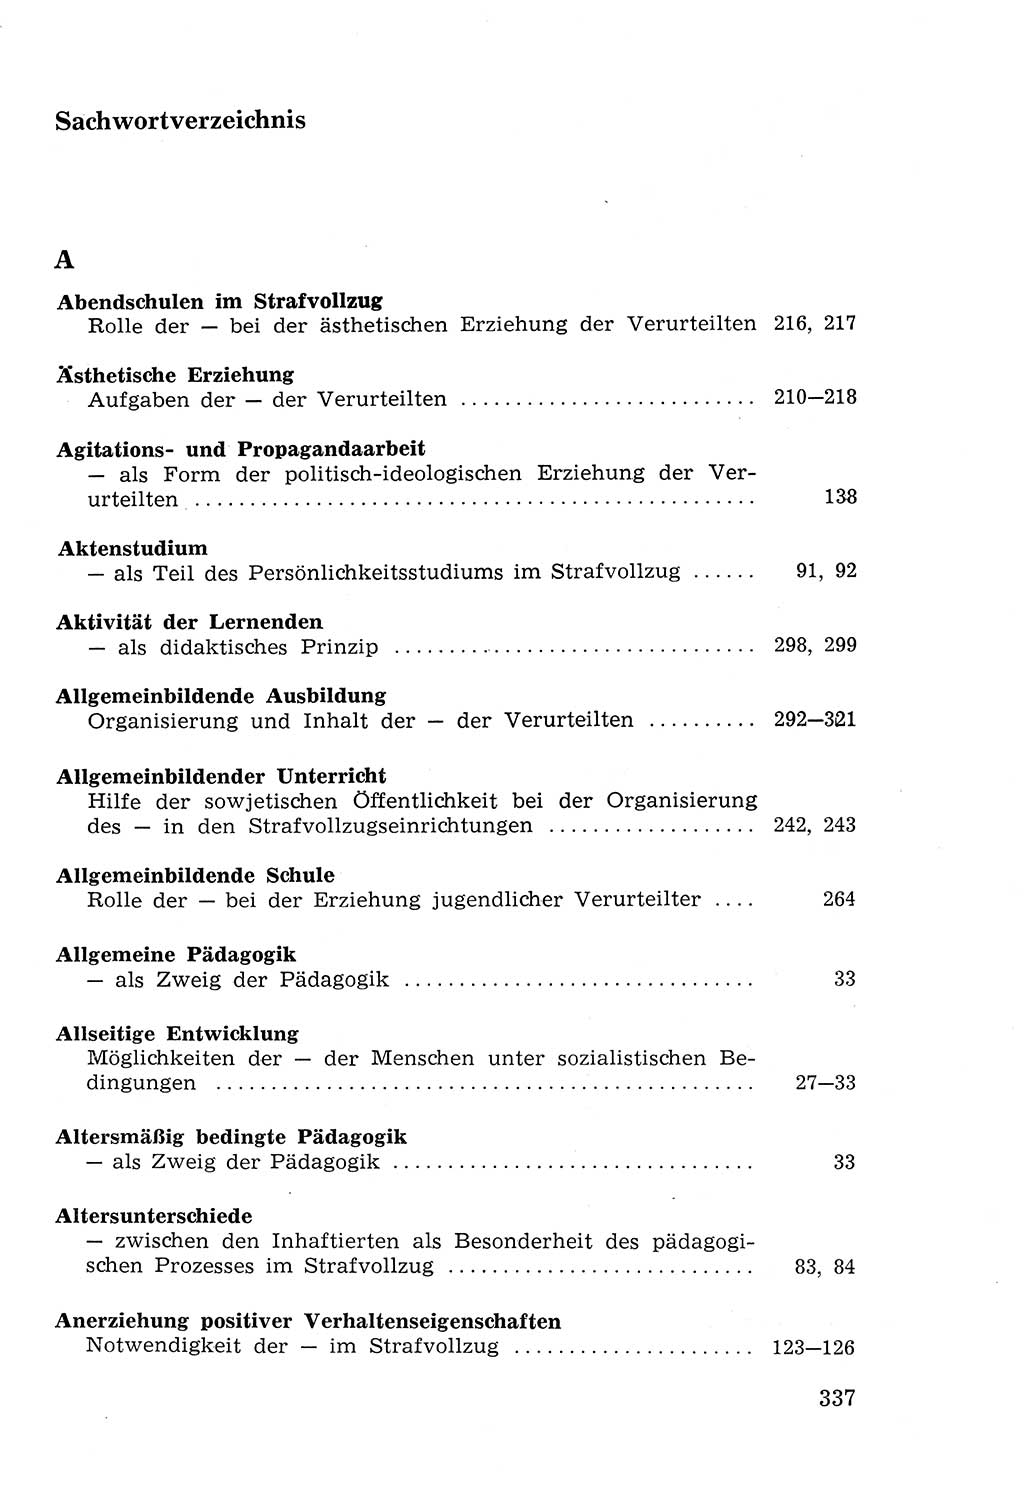 Lehrbuch der Strafvollzugspädagogik [Deutsche Demokratische Republik (DDR)] 1969, Seite 337 (Lb. SV-Pd. DDR 1969, S. 337)